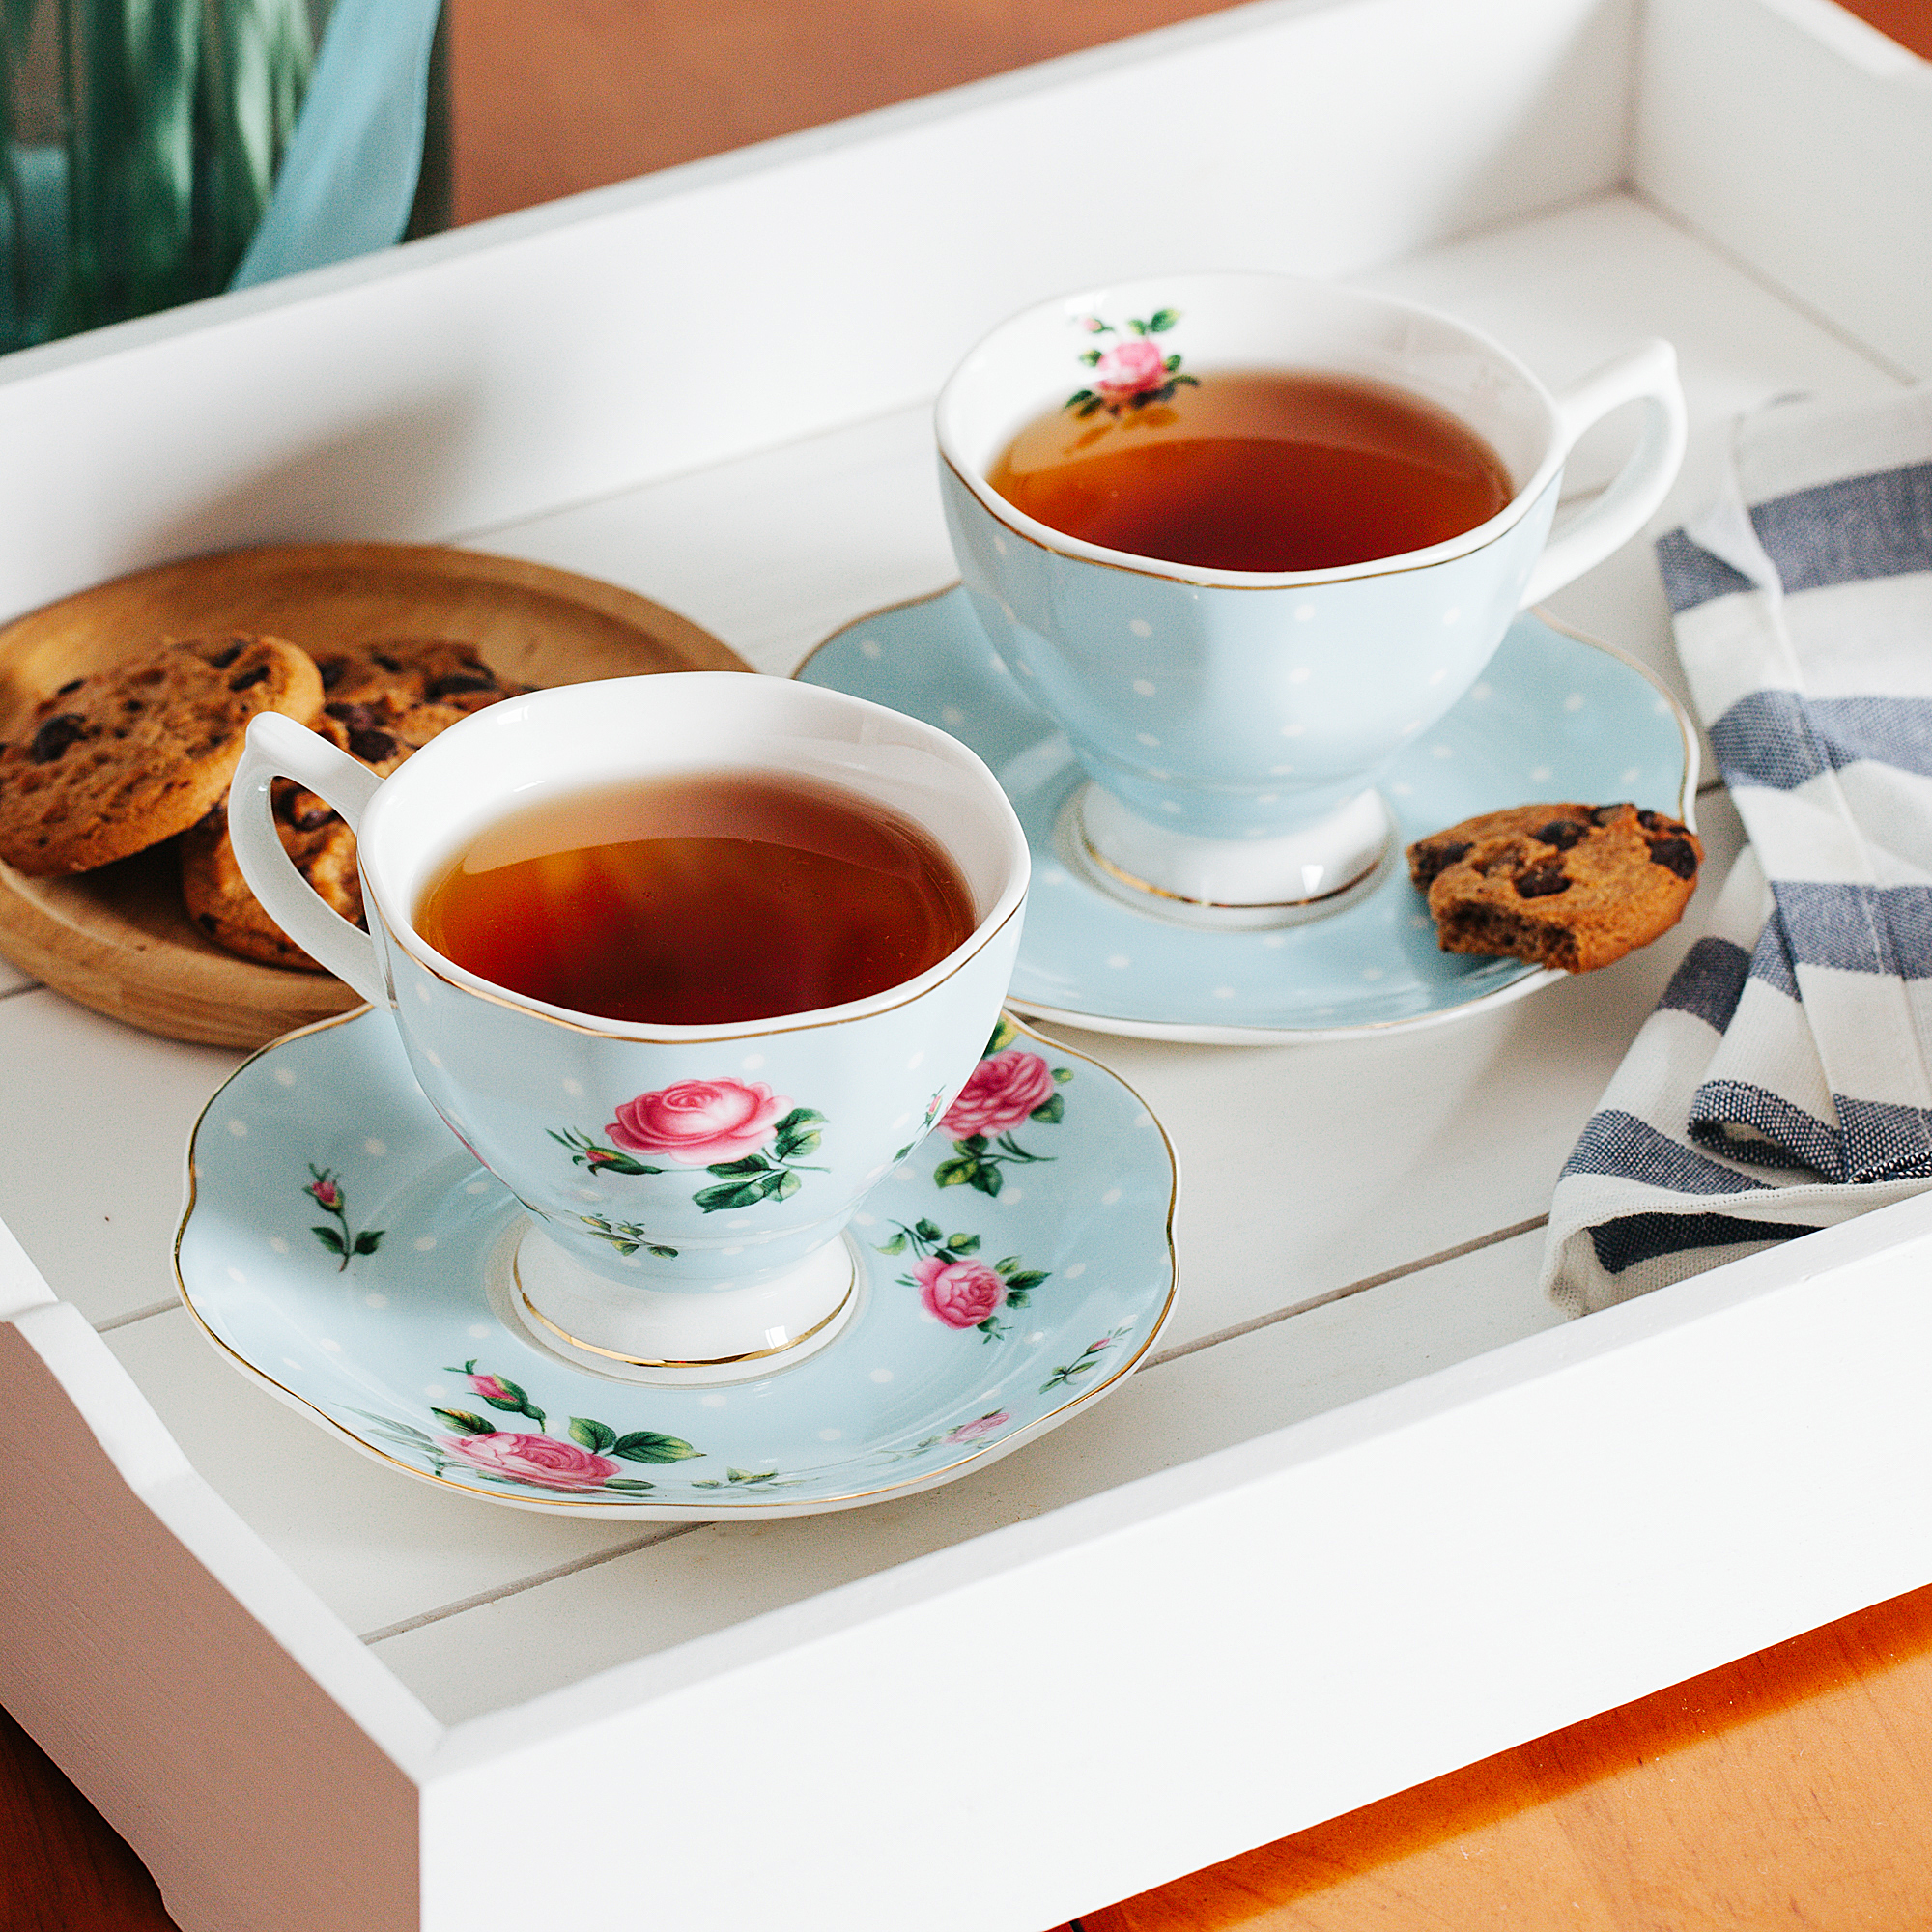 Tea Cup with Lid, Coffee Mugs